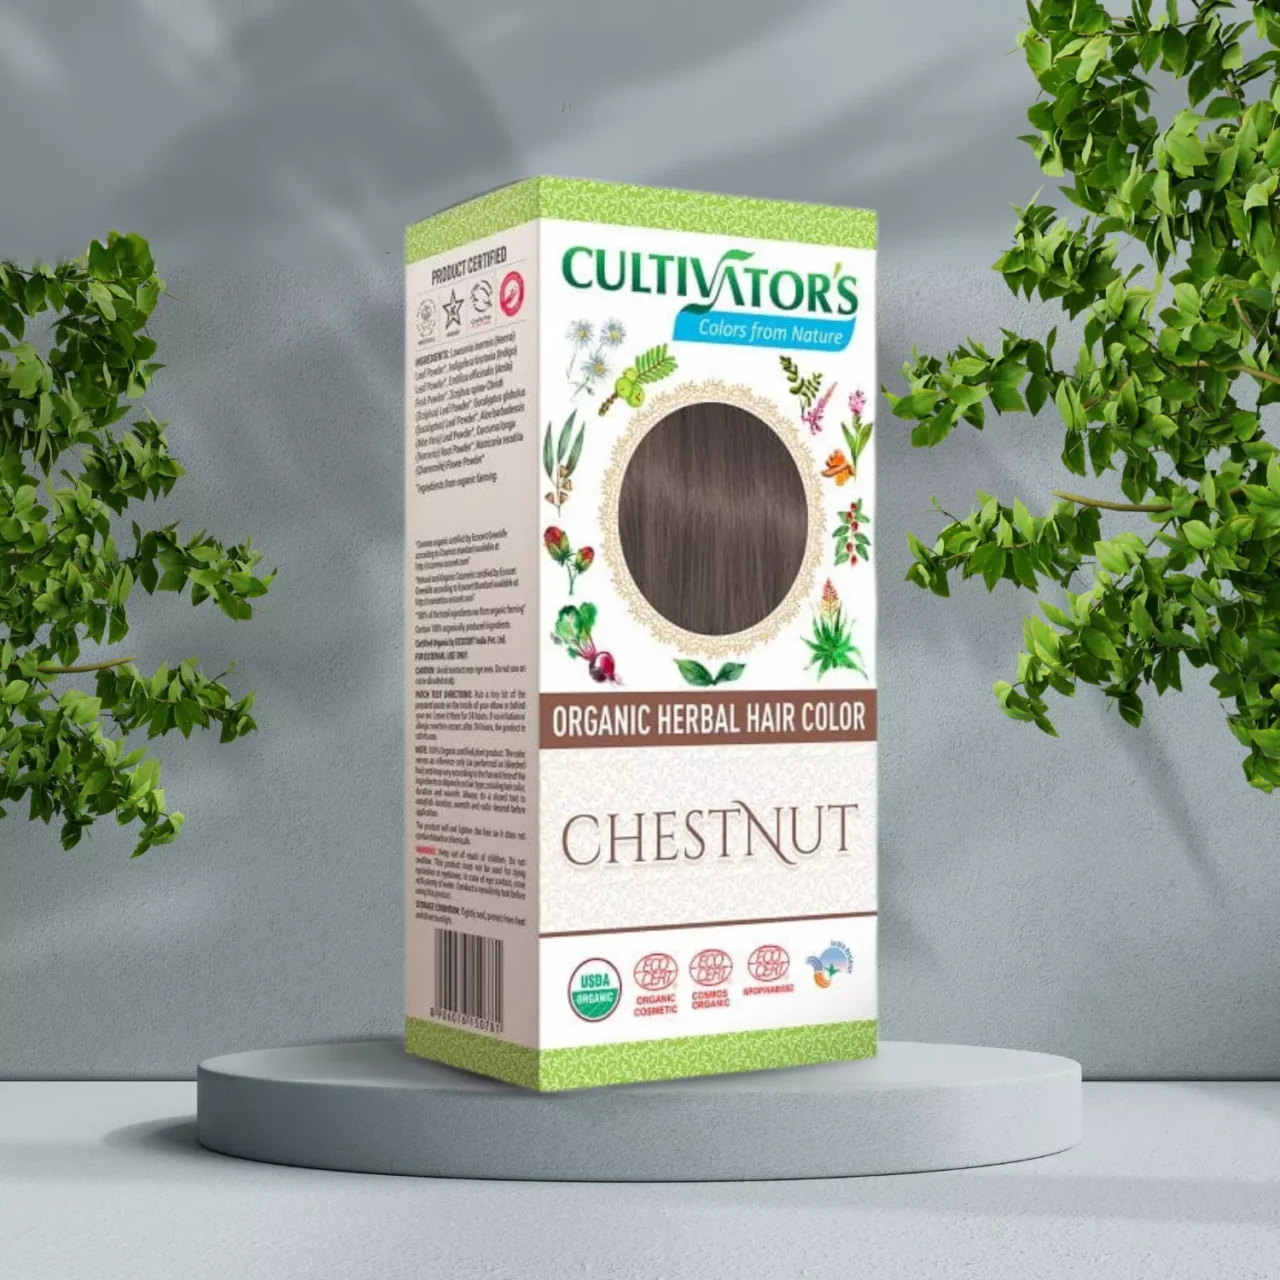 Cultivator's Henna Hårfarve Chestnut 100g naturlig hårfarve er kastanje, fremmer naturlig skønhed og styrker velvære.